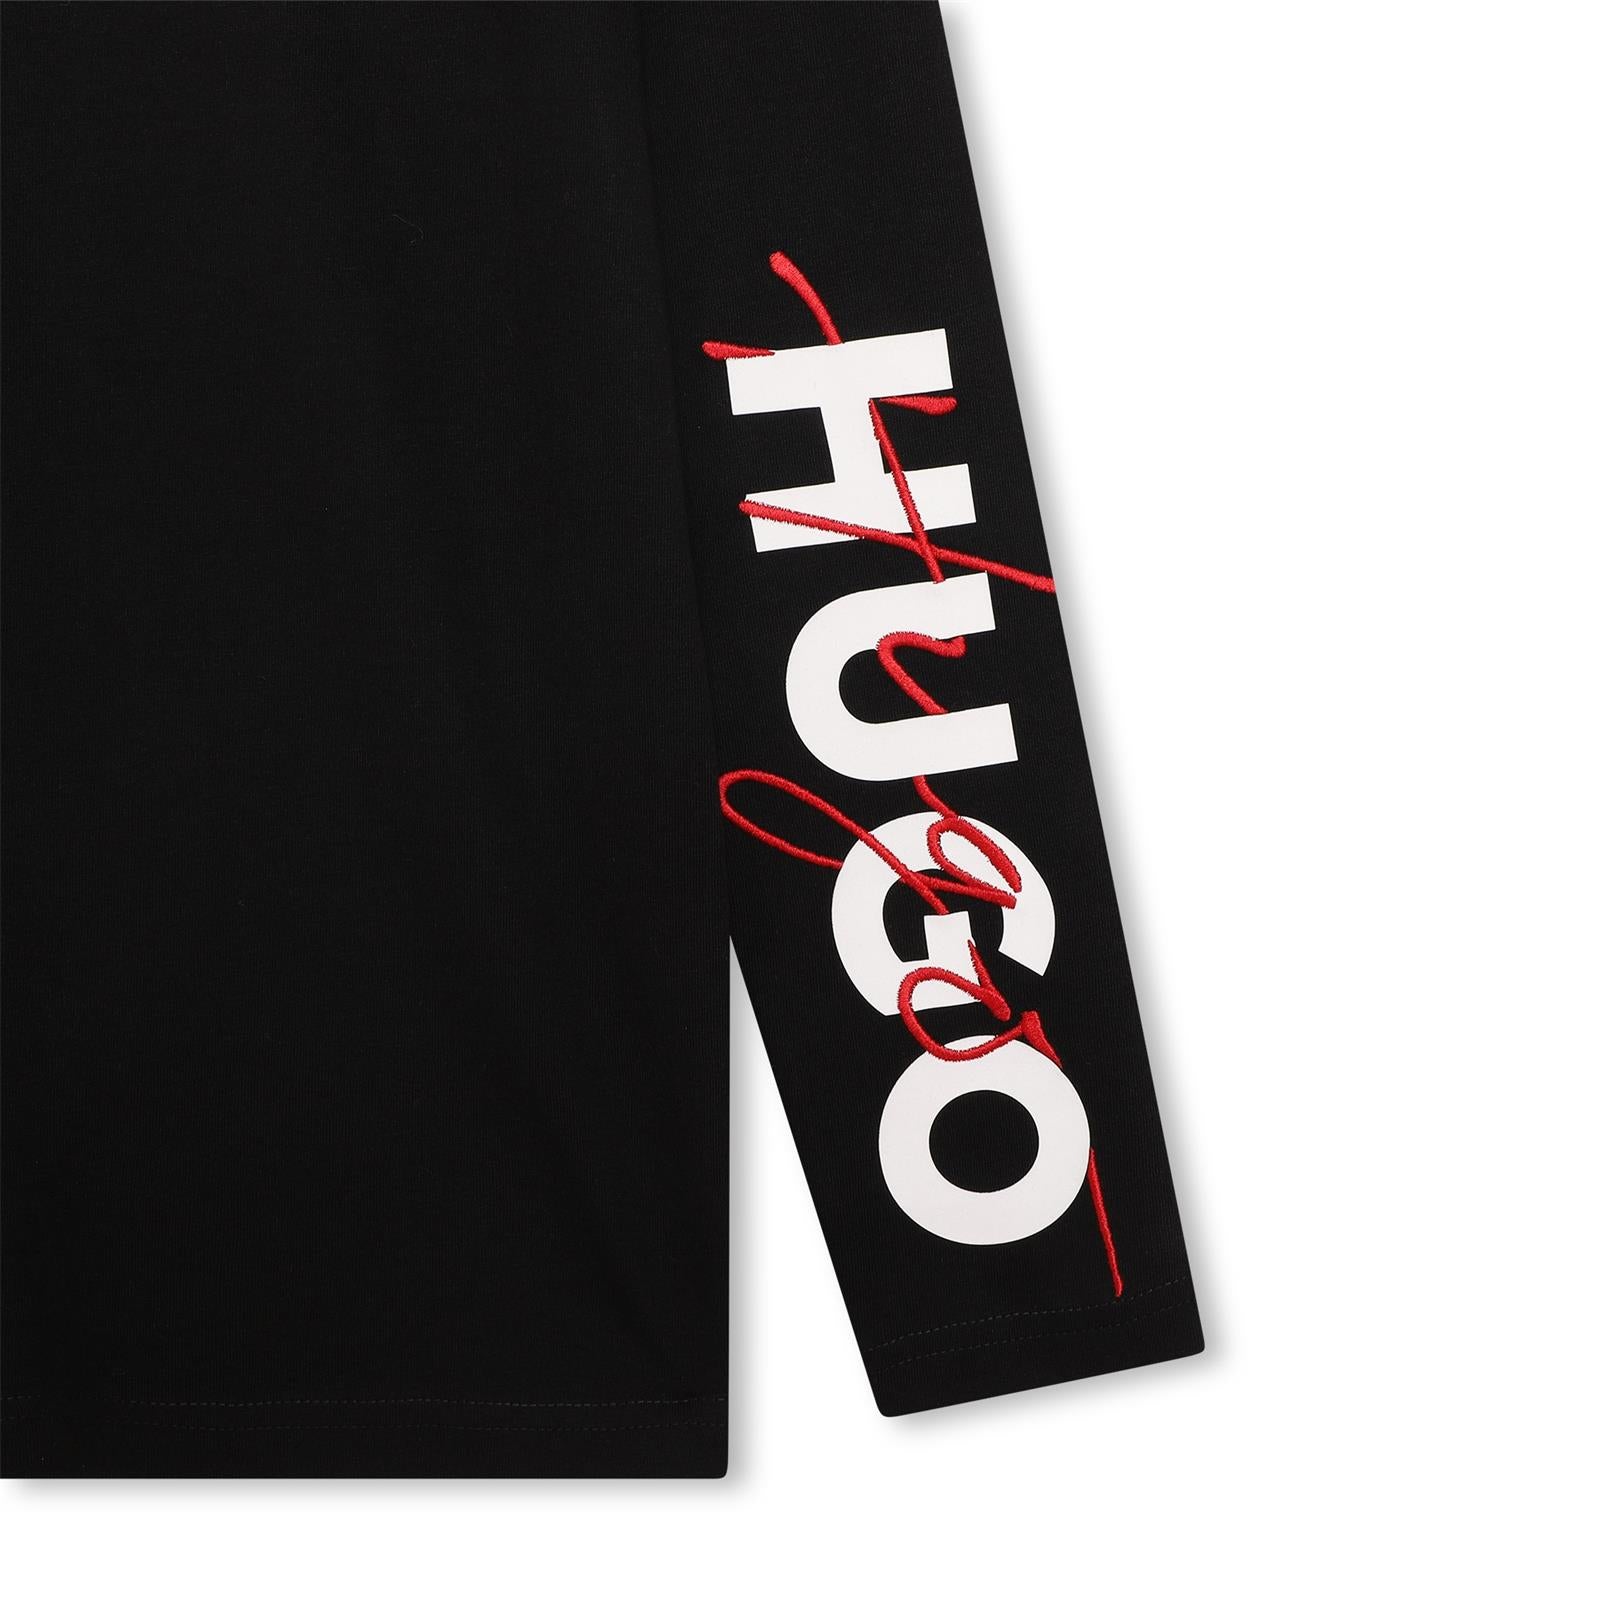 Hugo Long-Sleeve Black Top